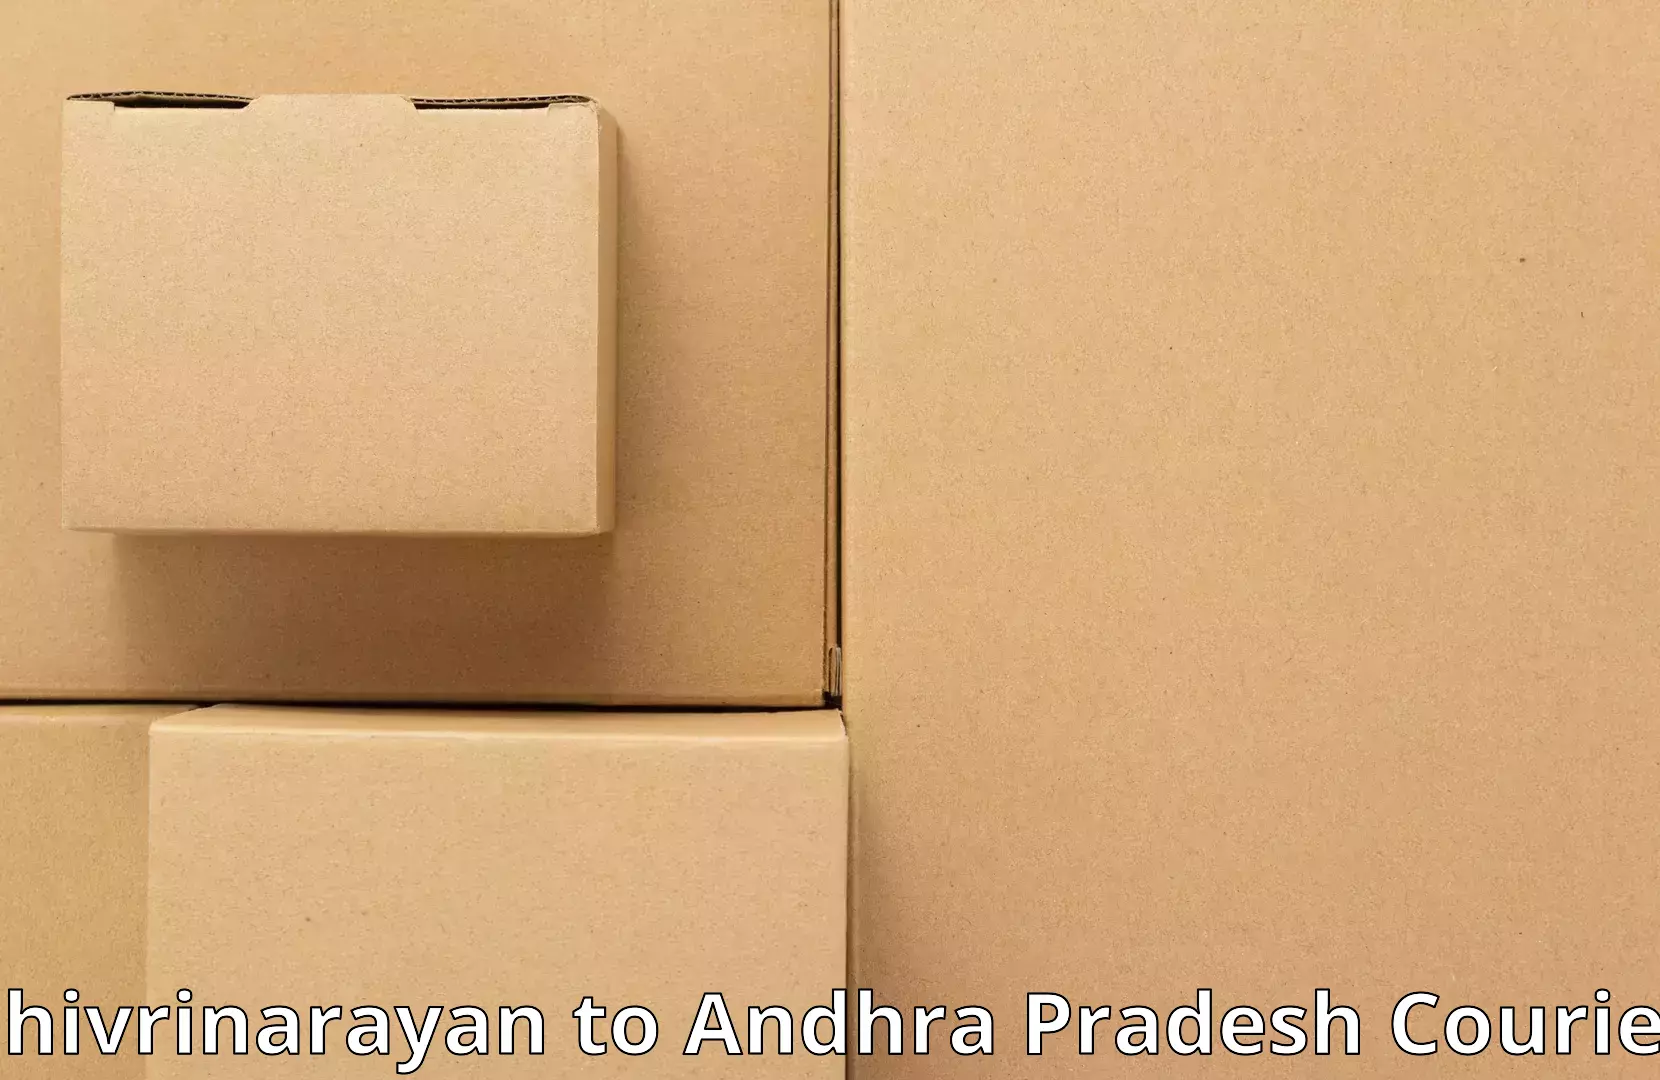 Household moving solutions Shivrinarayan to Paderu